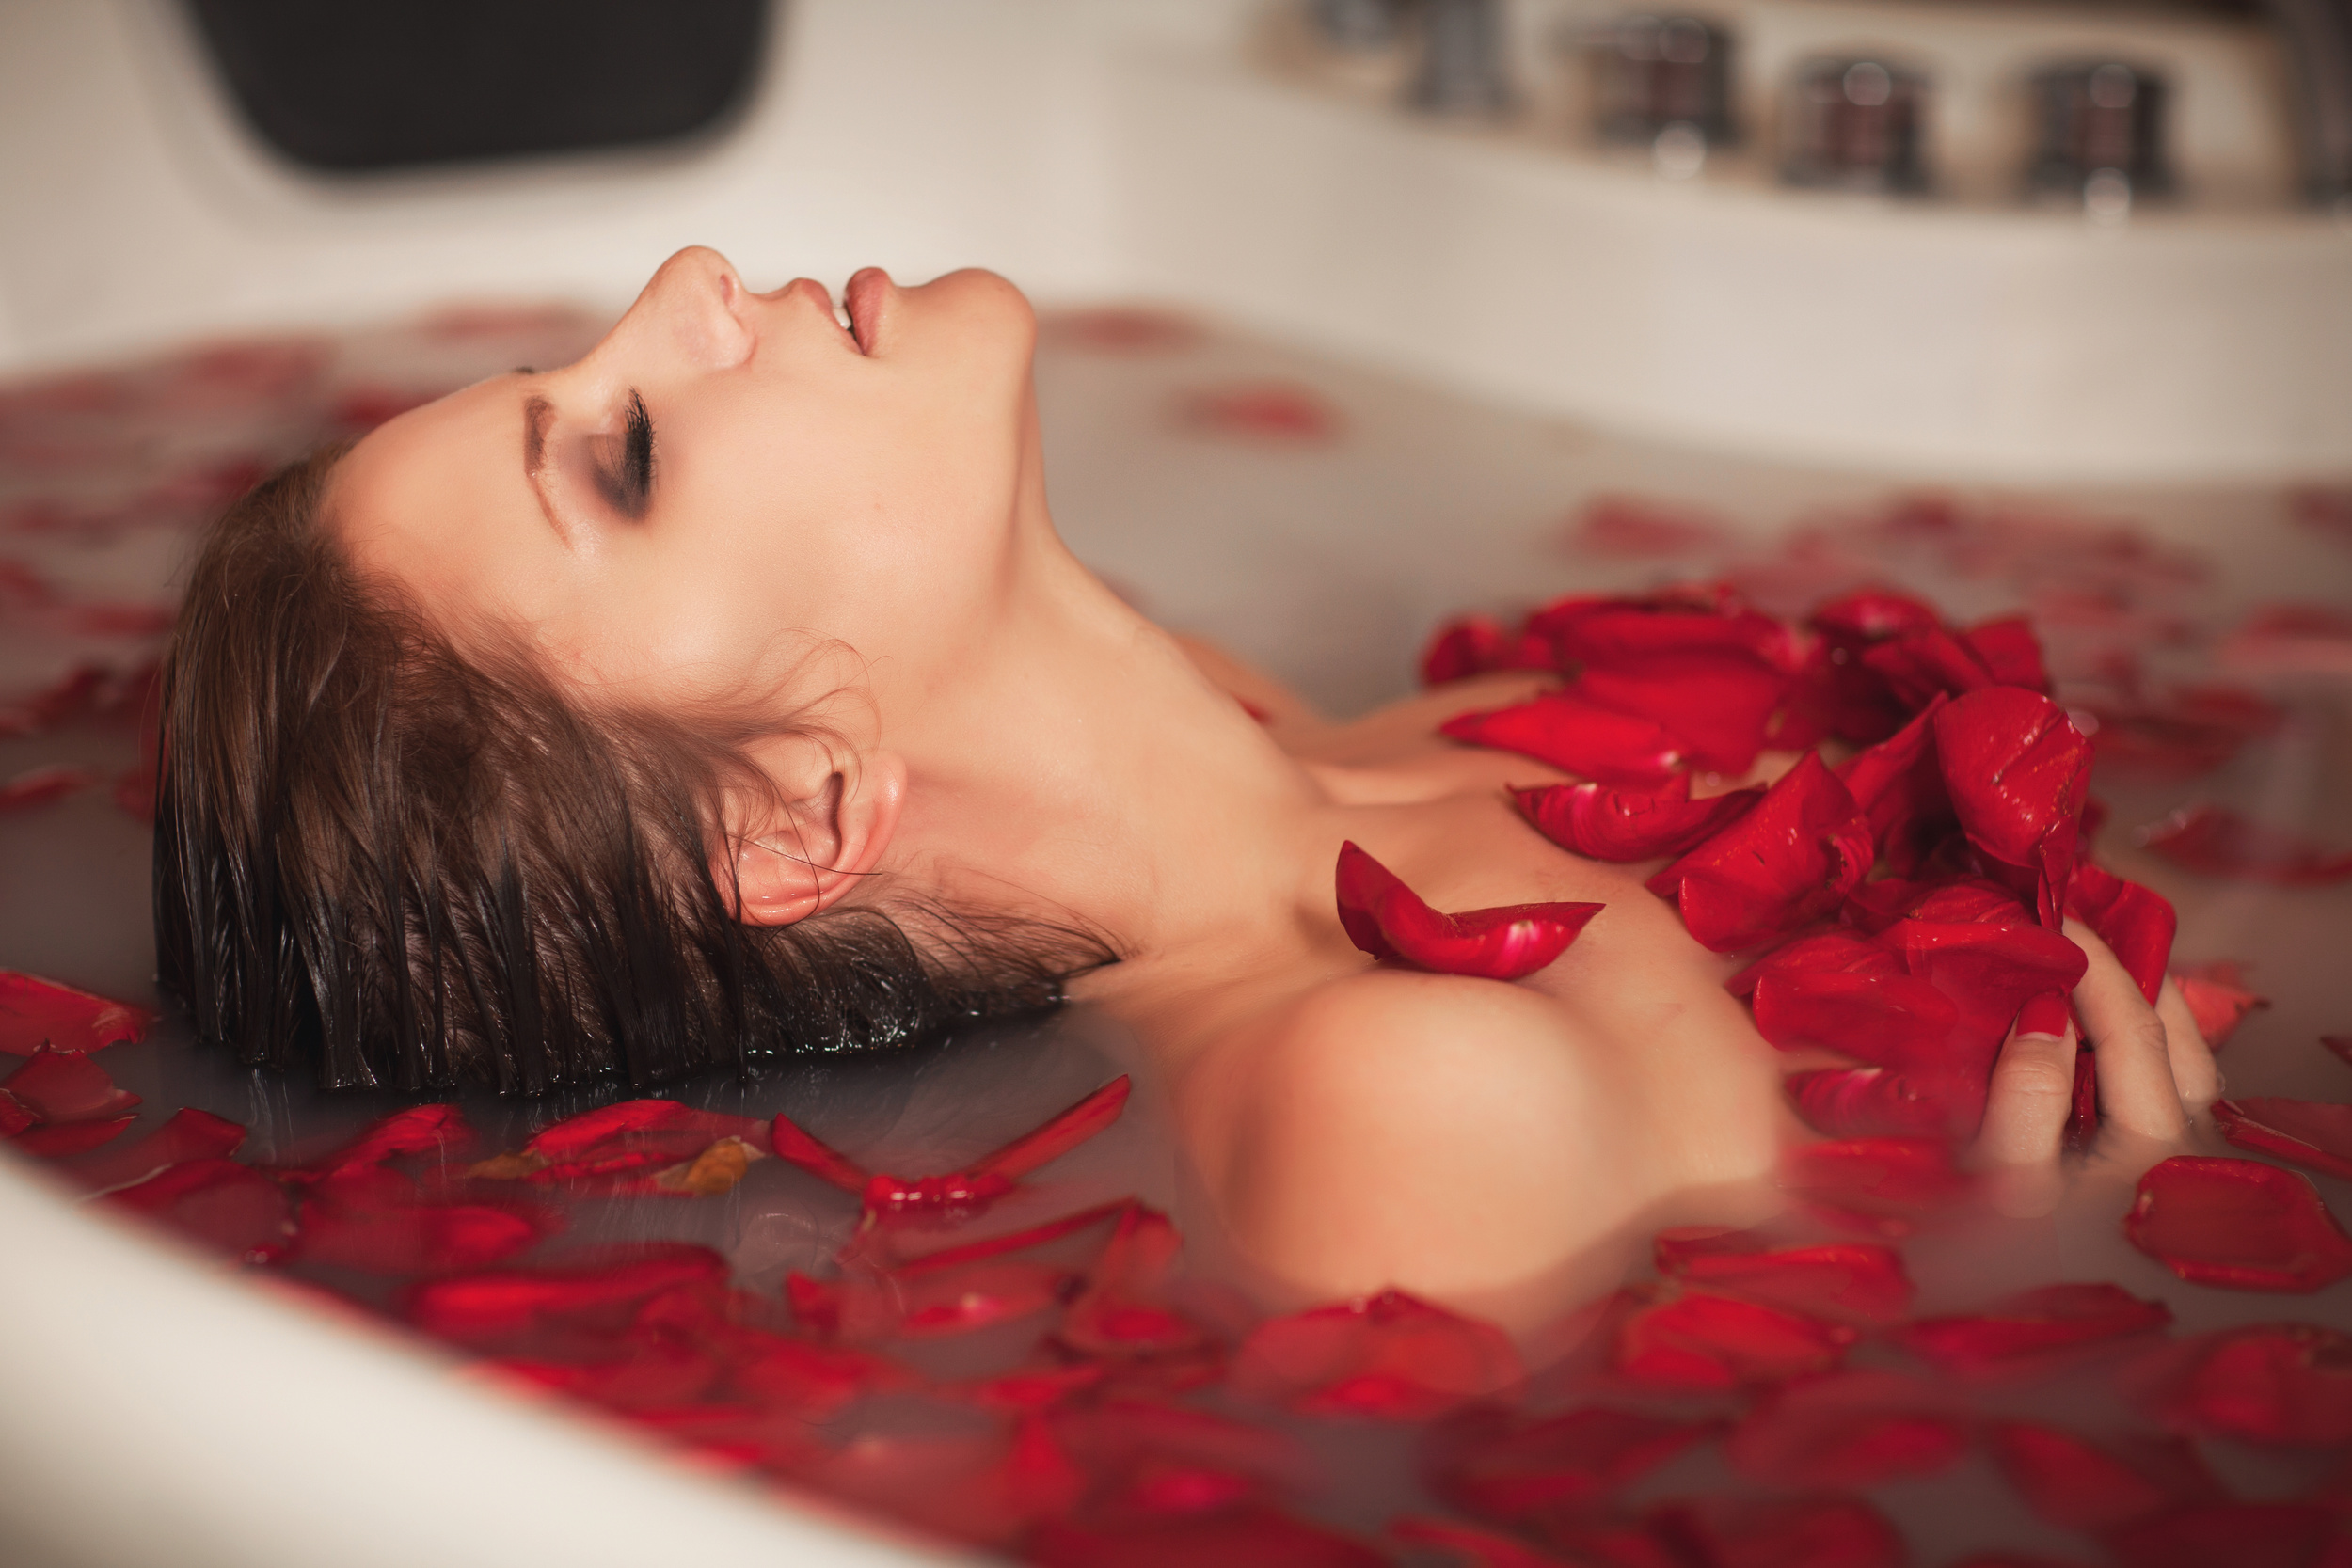 Эротика рыжей в большой ванне-джакузи